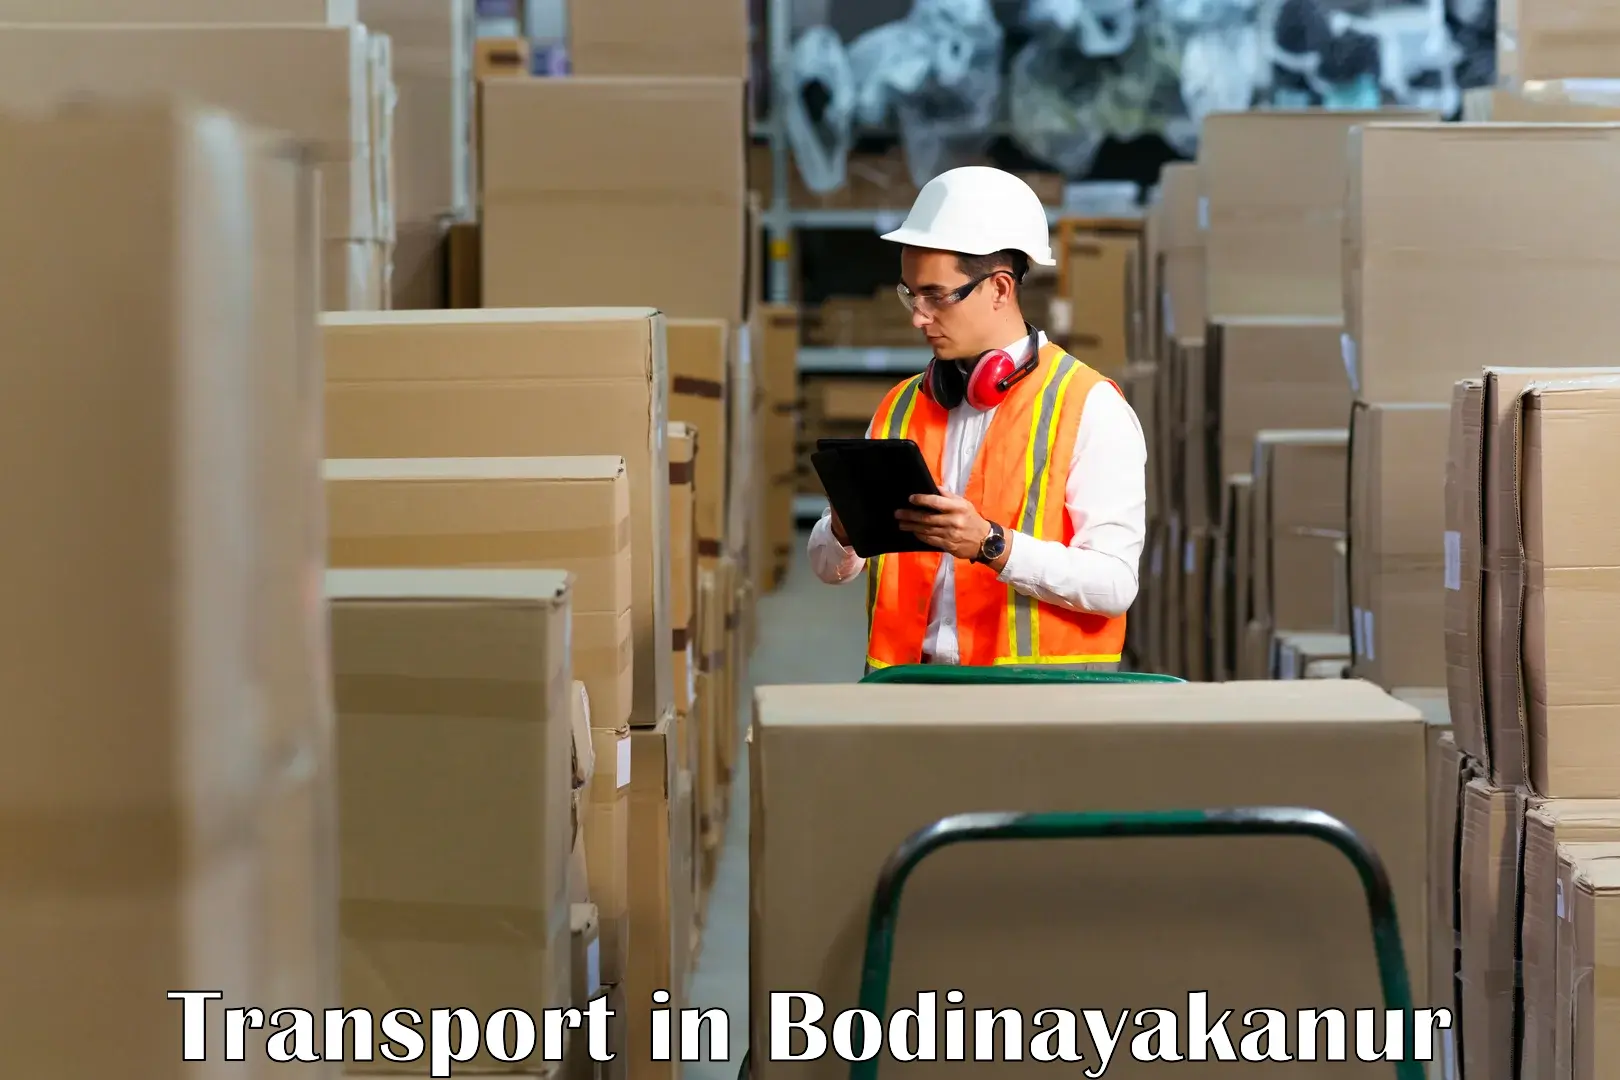 Online transport service in Bodinayakanur